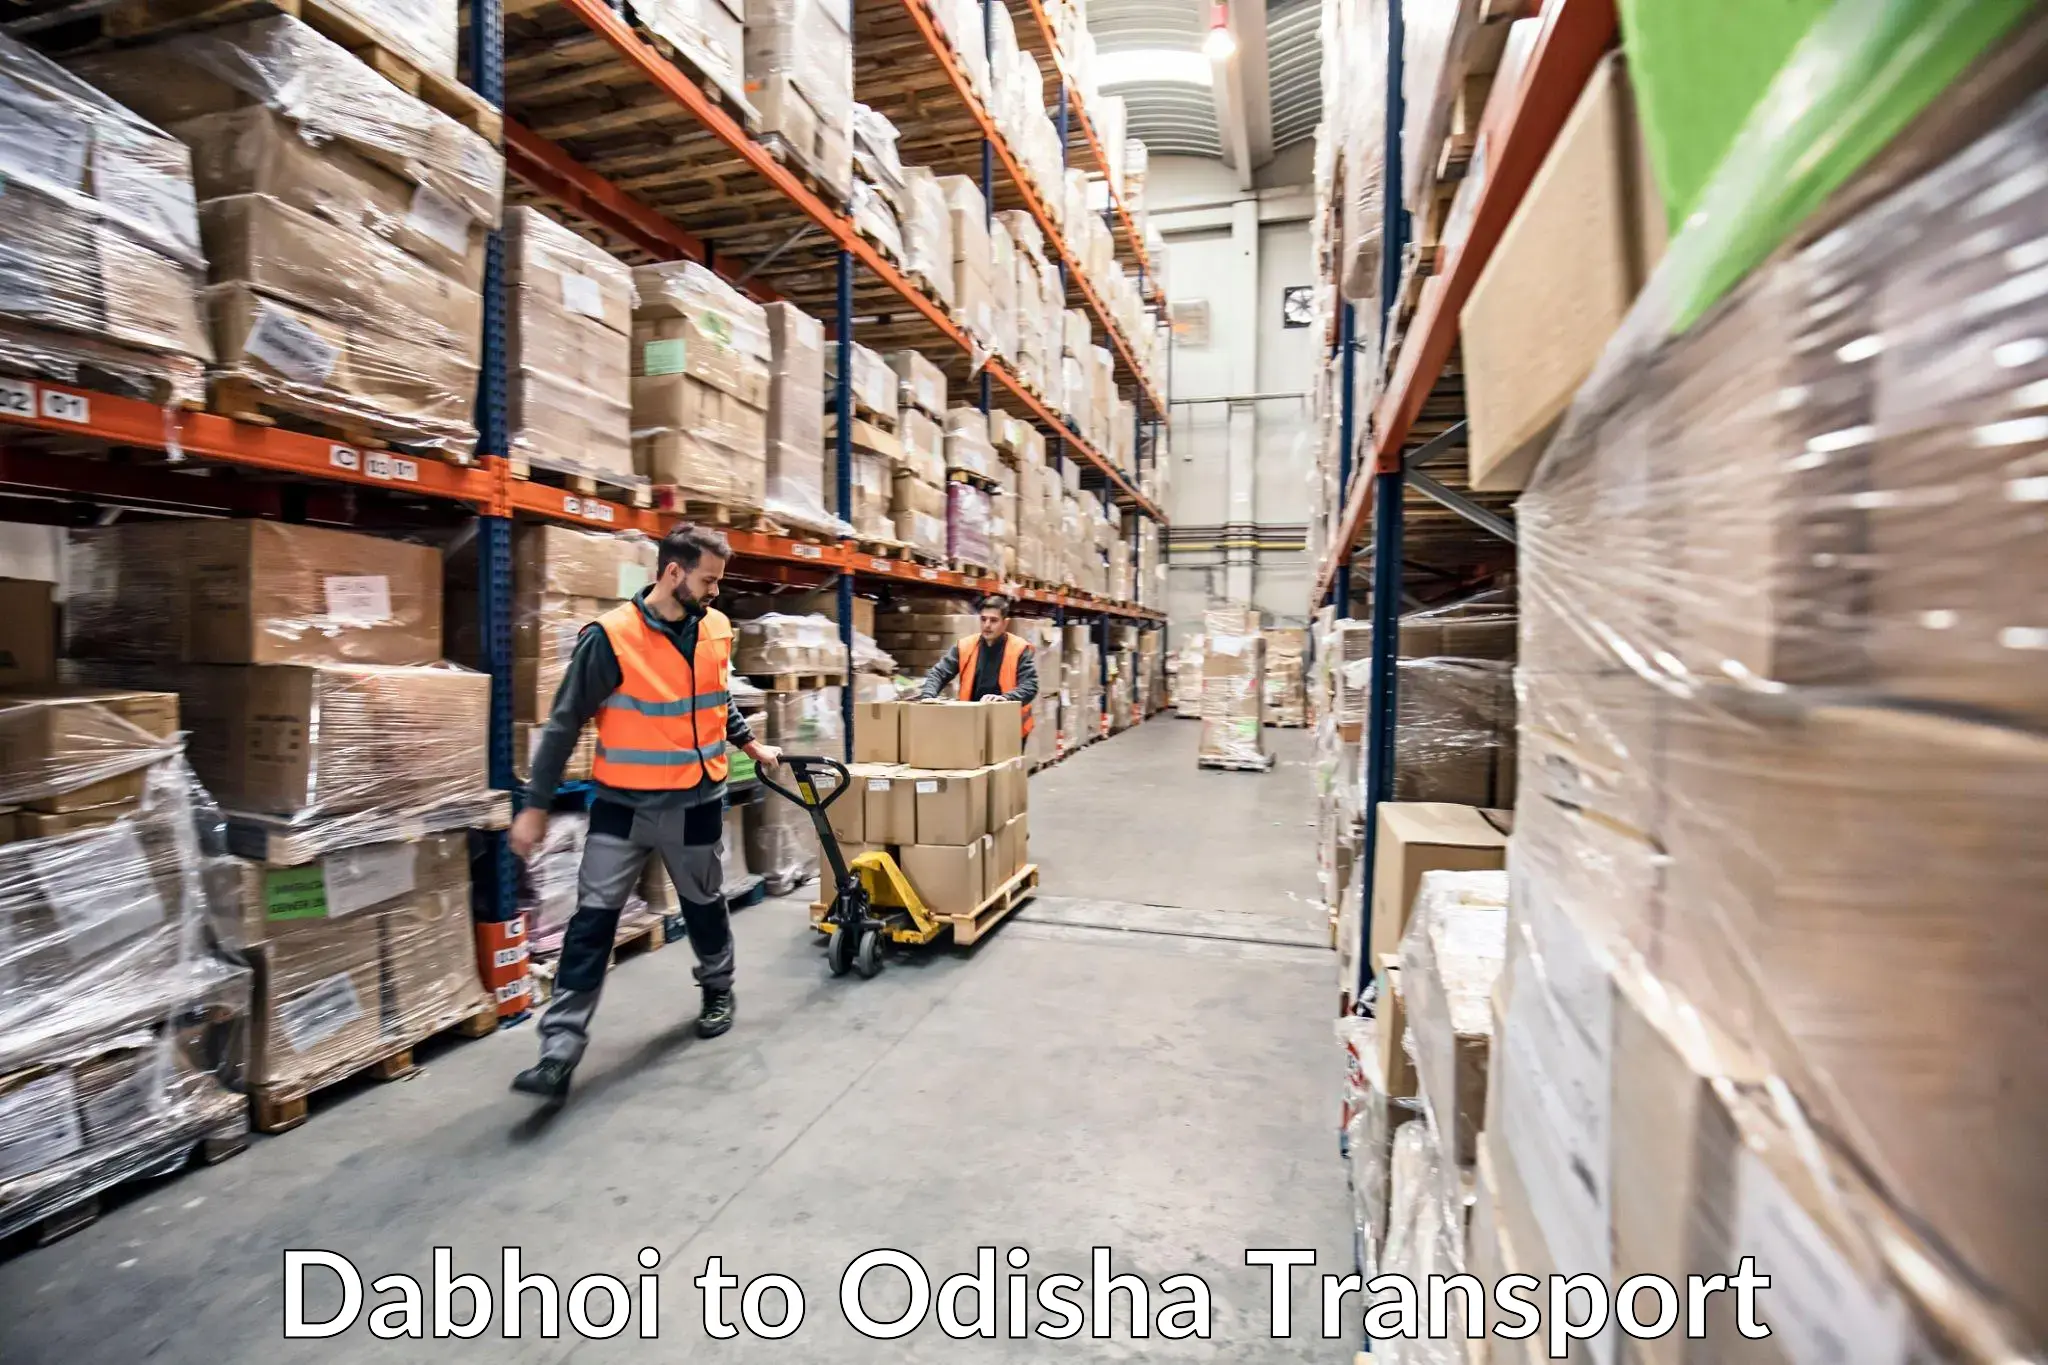 Cargo transport services Dabhoi to Paradip Port